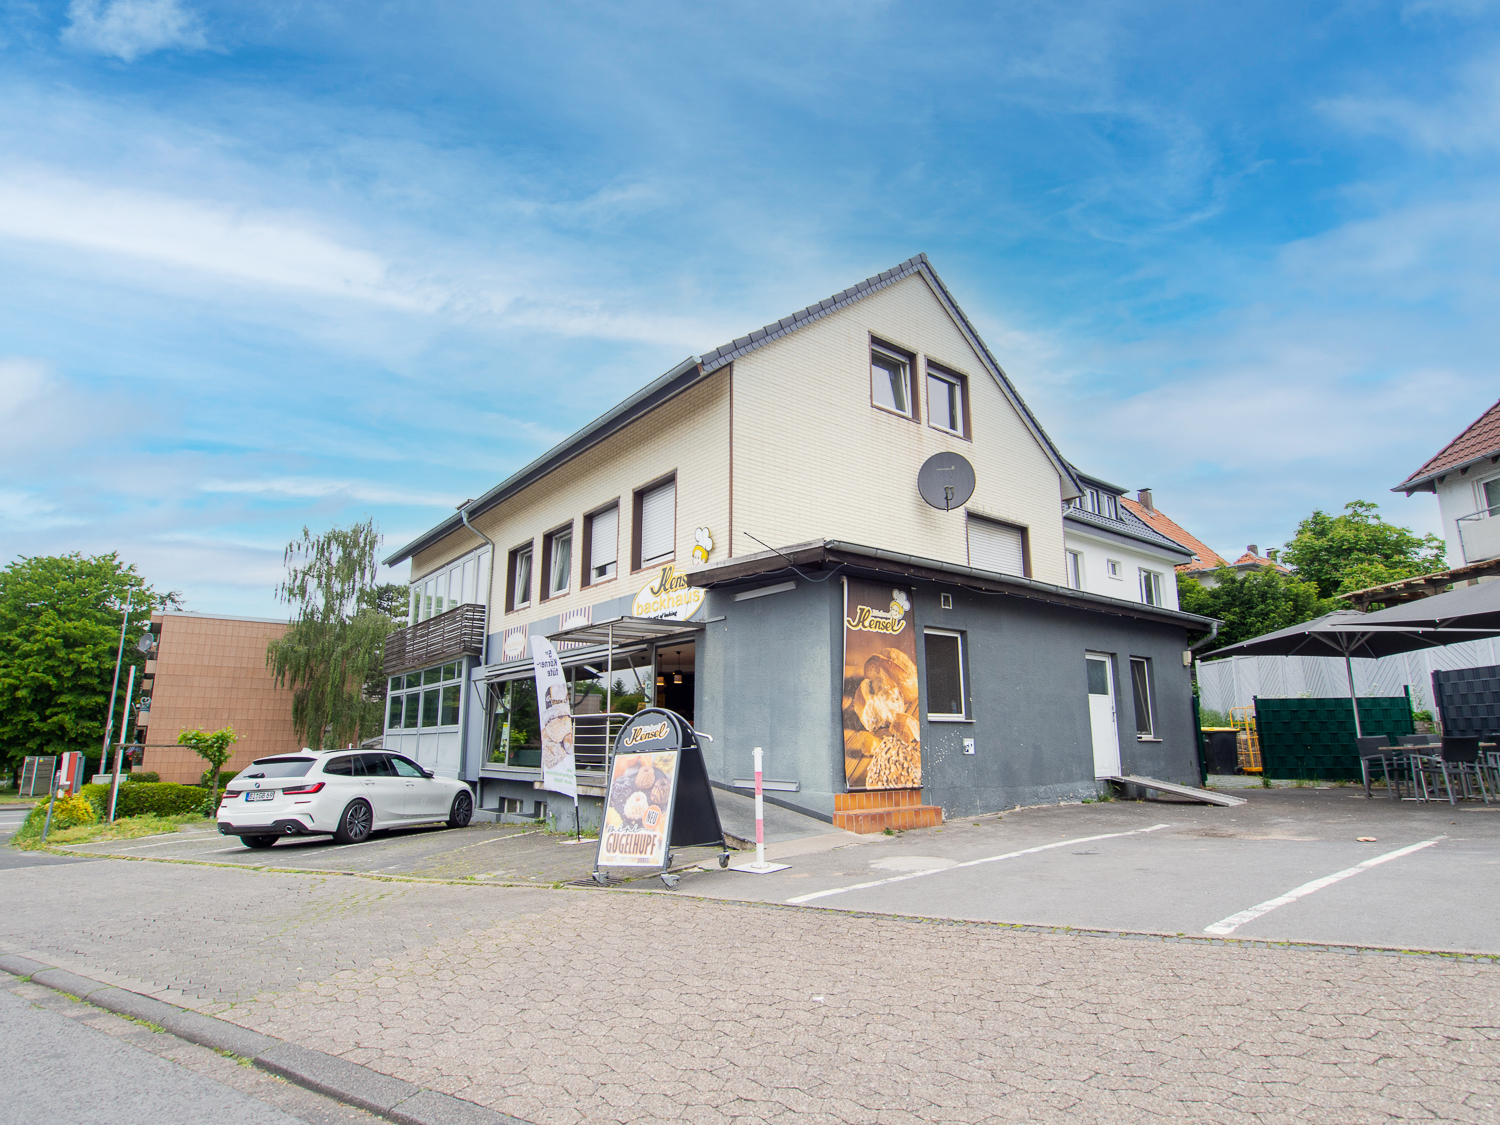 Attraktives Wohn-Geschäftshaus in zentraler Lage von Bad Salzuflen!